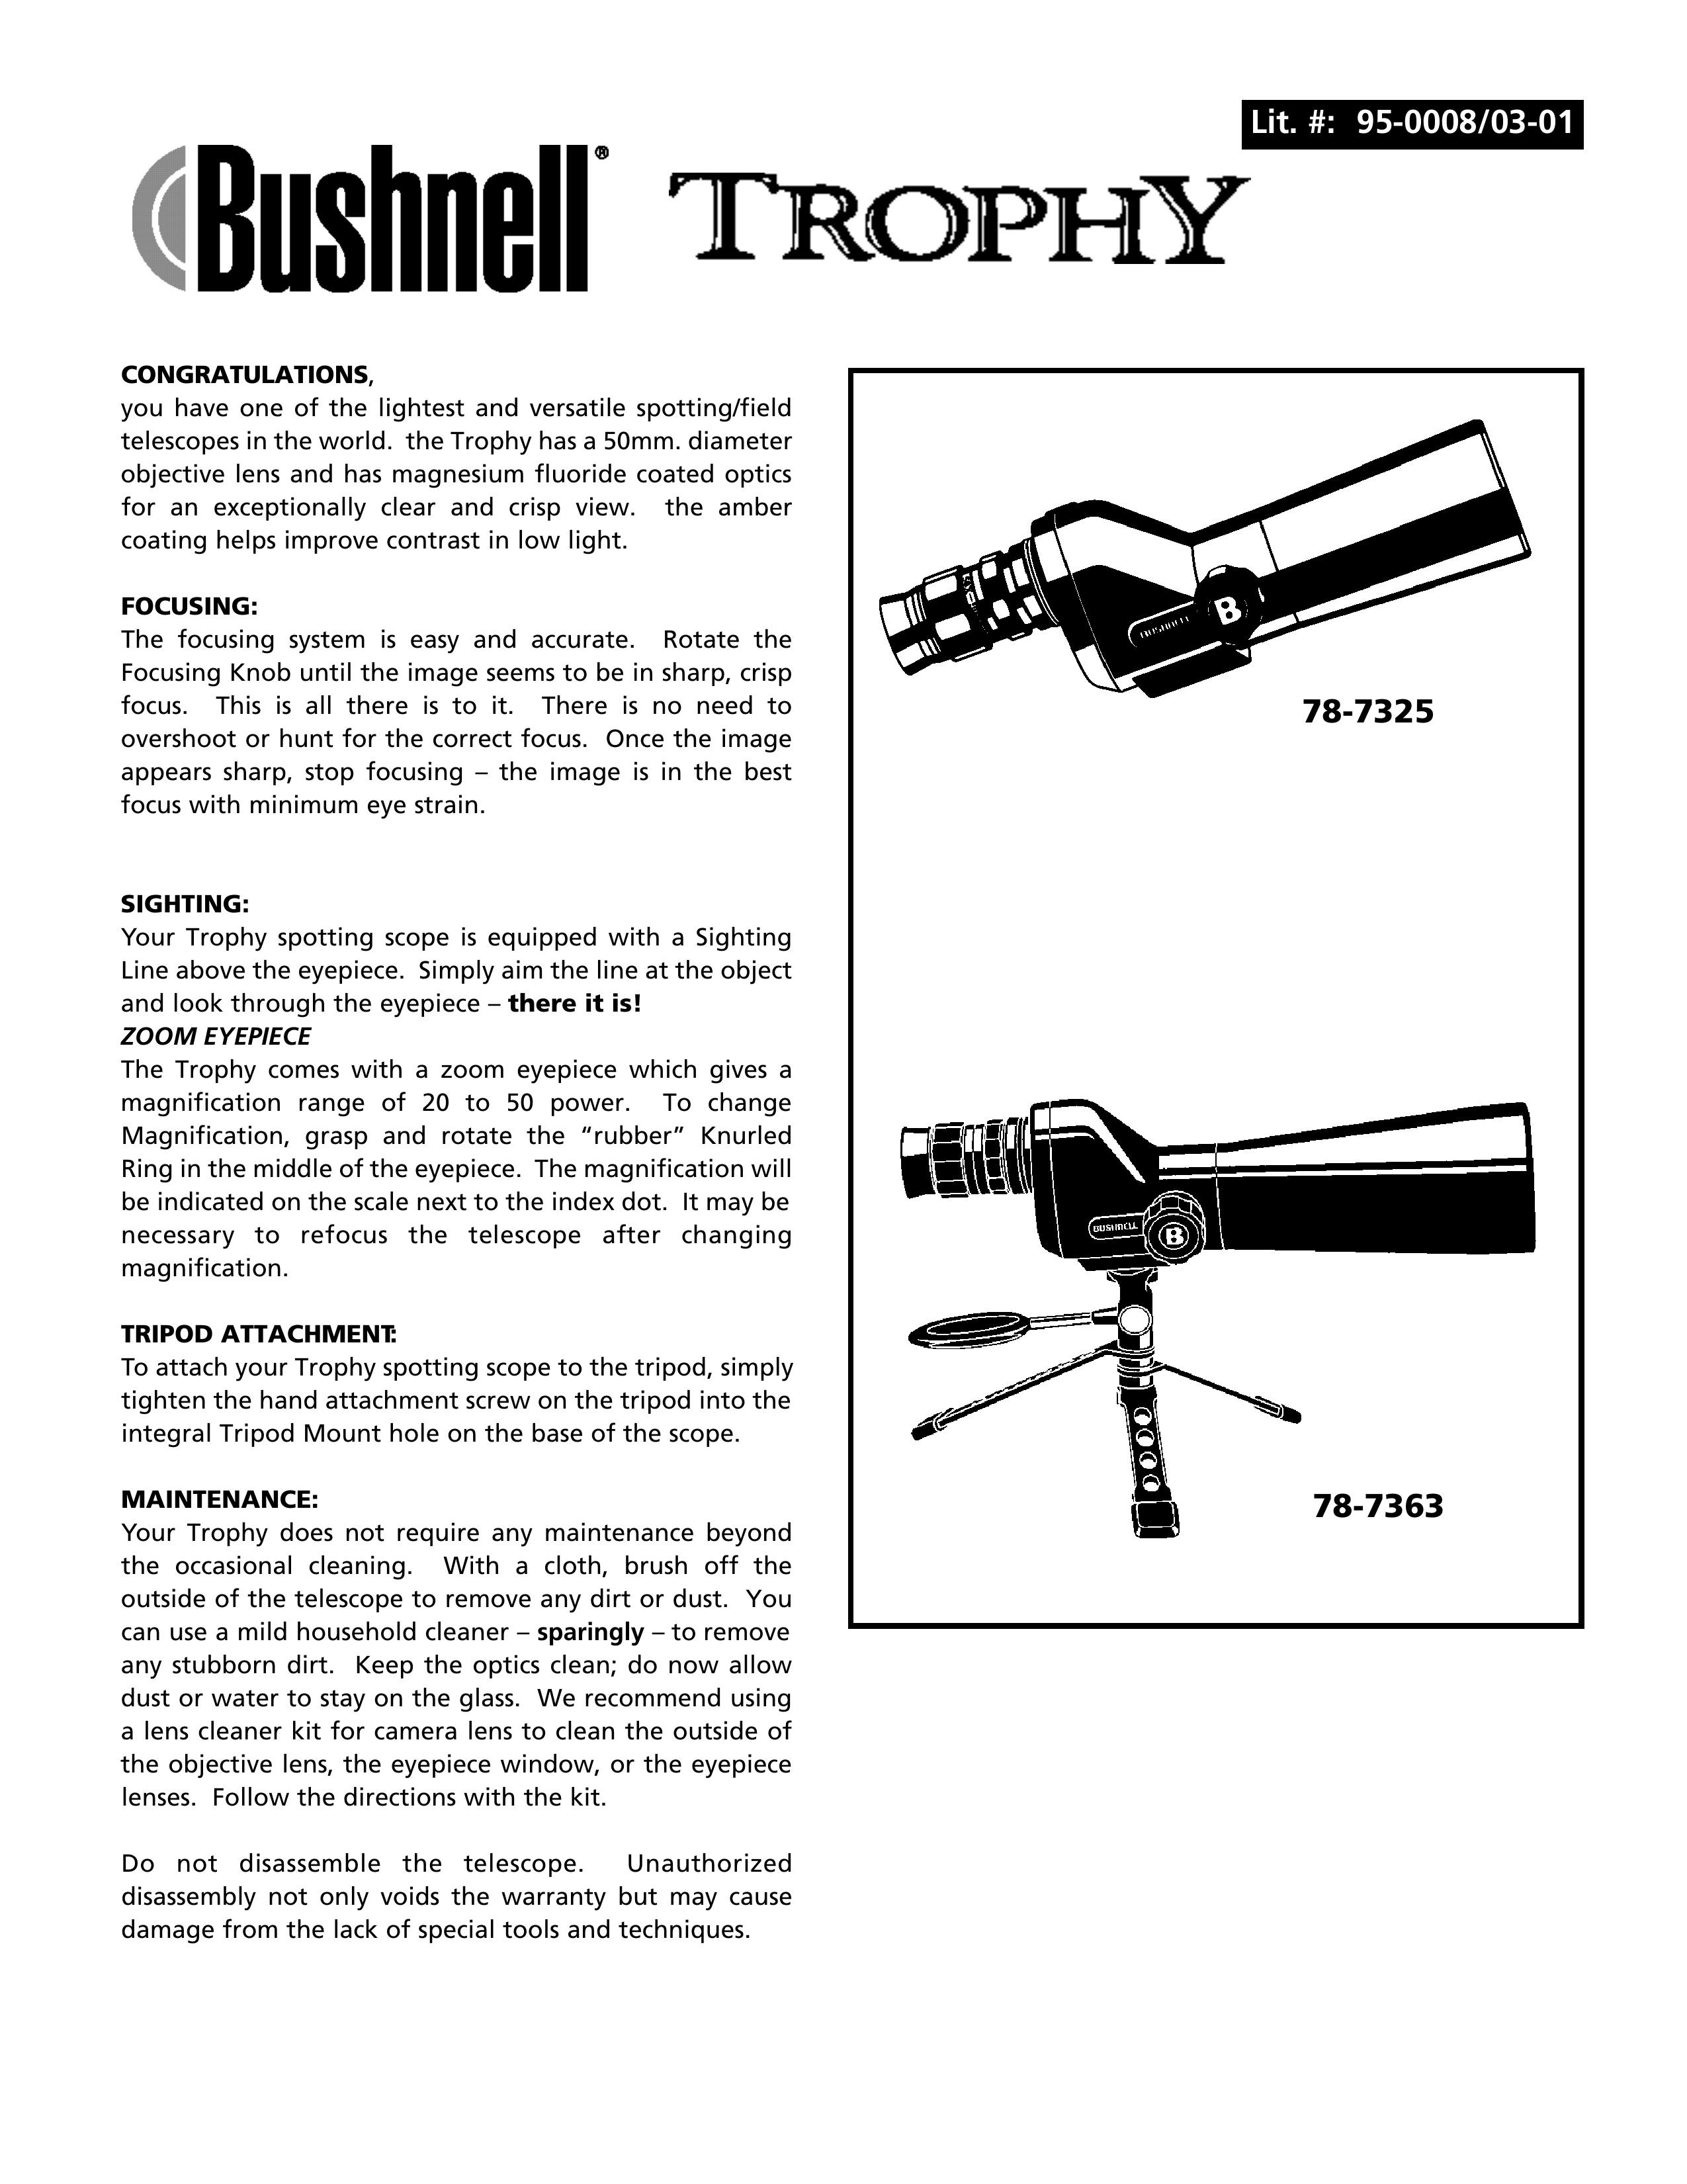 Bushnell 78-7325 Telescope User Manual